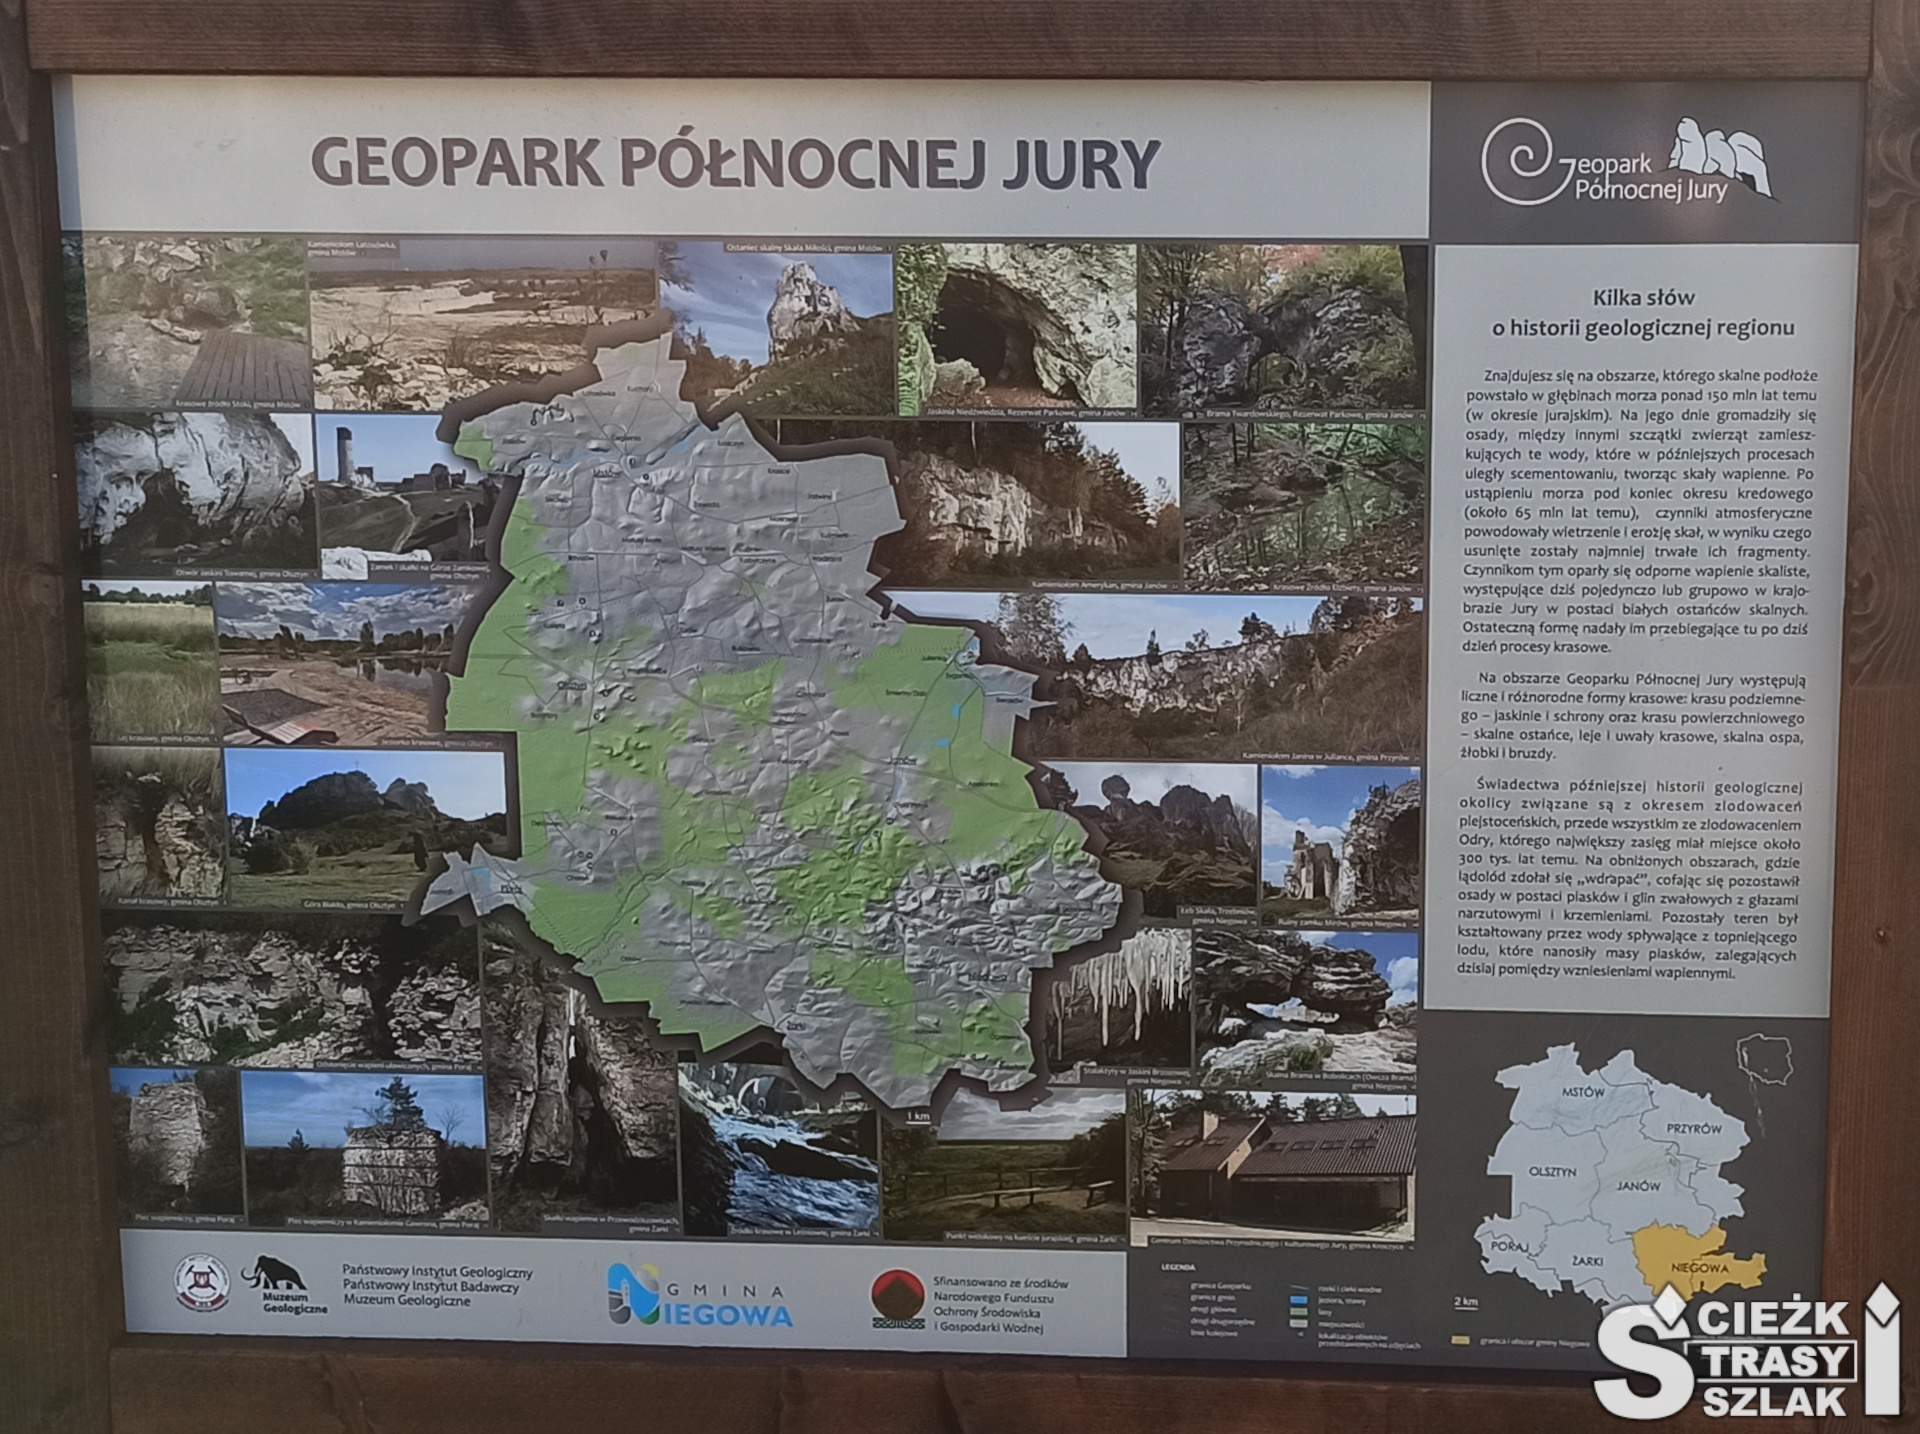 Tablica informacyjna wyjaśniająca czym jest Geopark Północnej Jury Krakowsko-Częstochowskiej przy Zamku w Mirowie